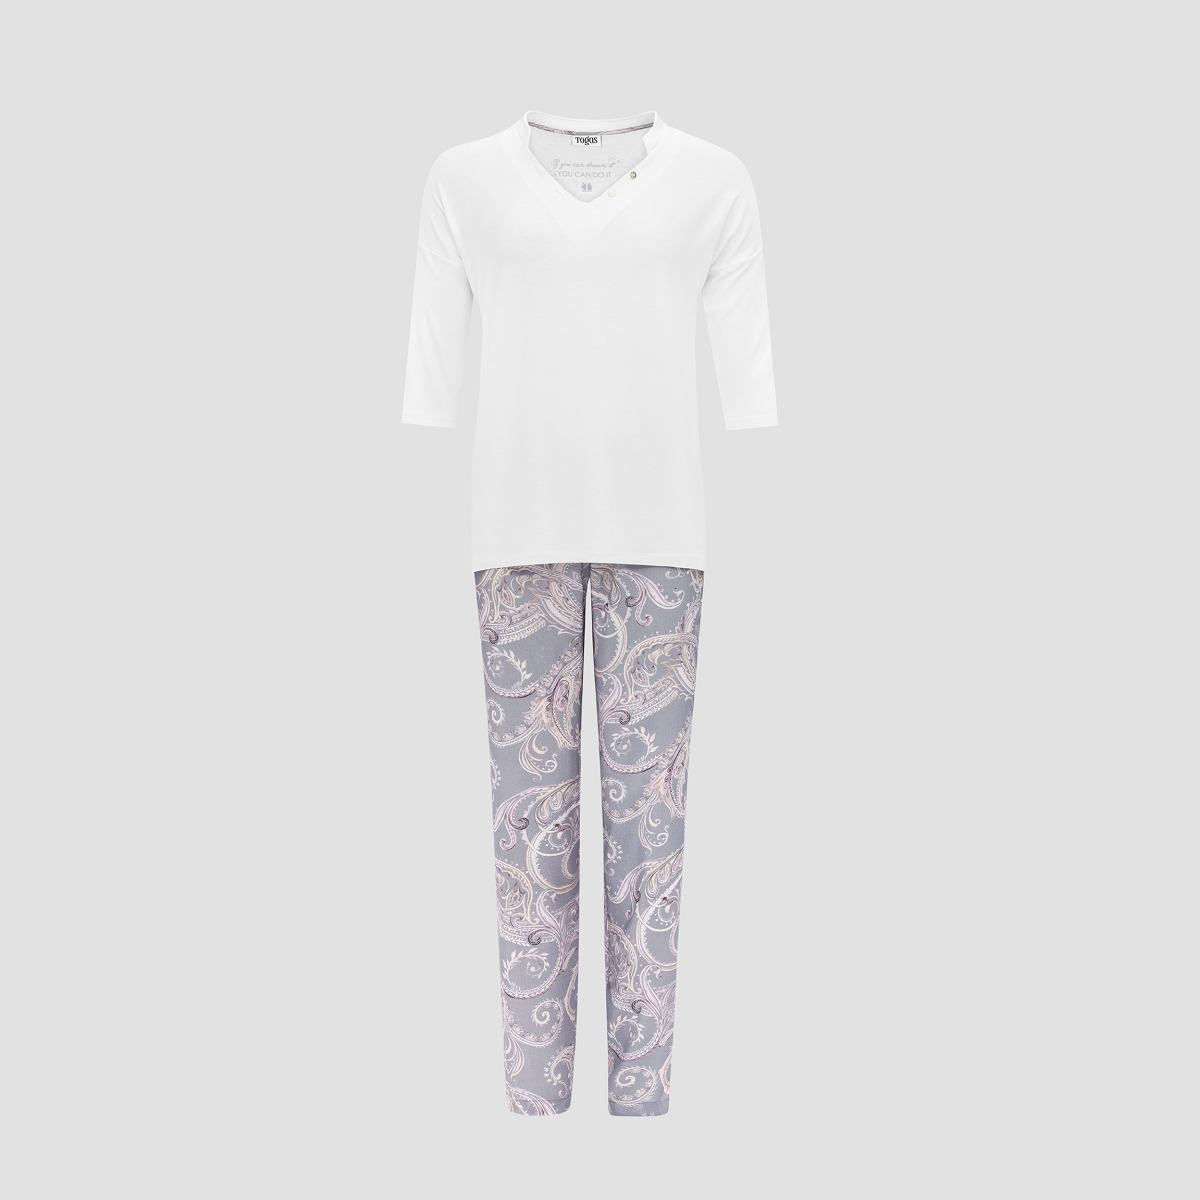 Пижама Togas Эсме бело-сиреневая женская xl(50), цвет бело-сиреневый, размер XL (50) - фото 1